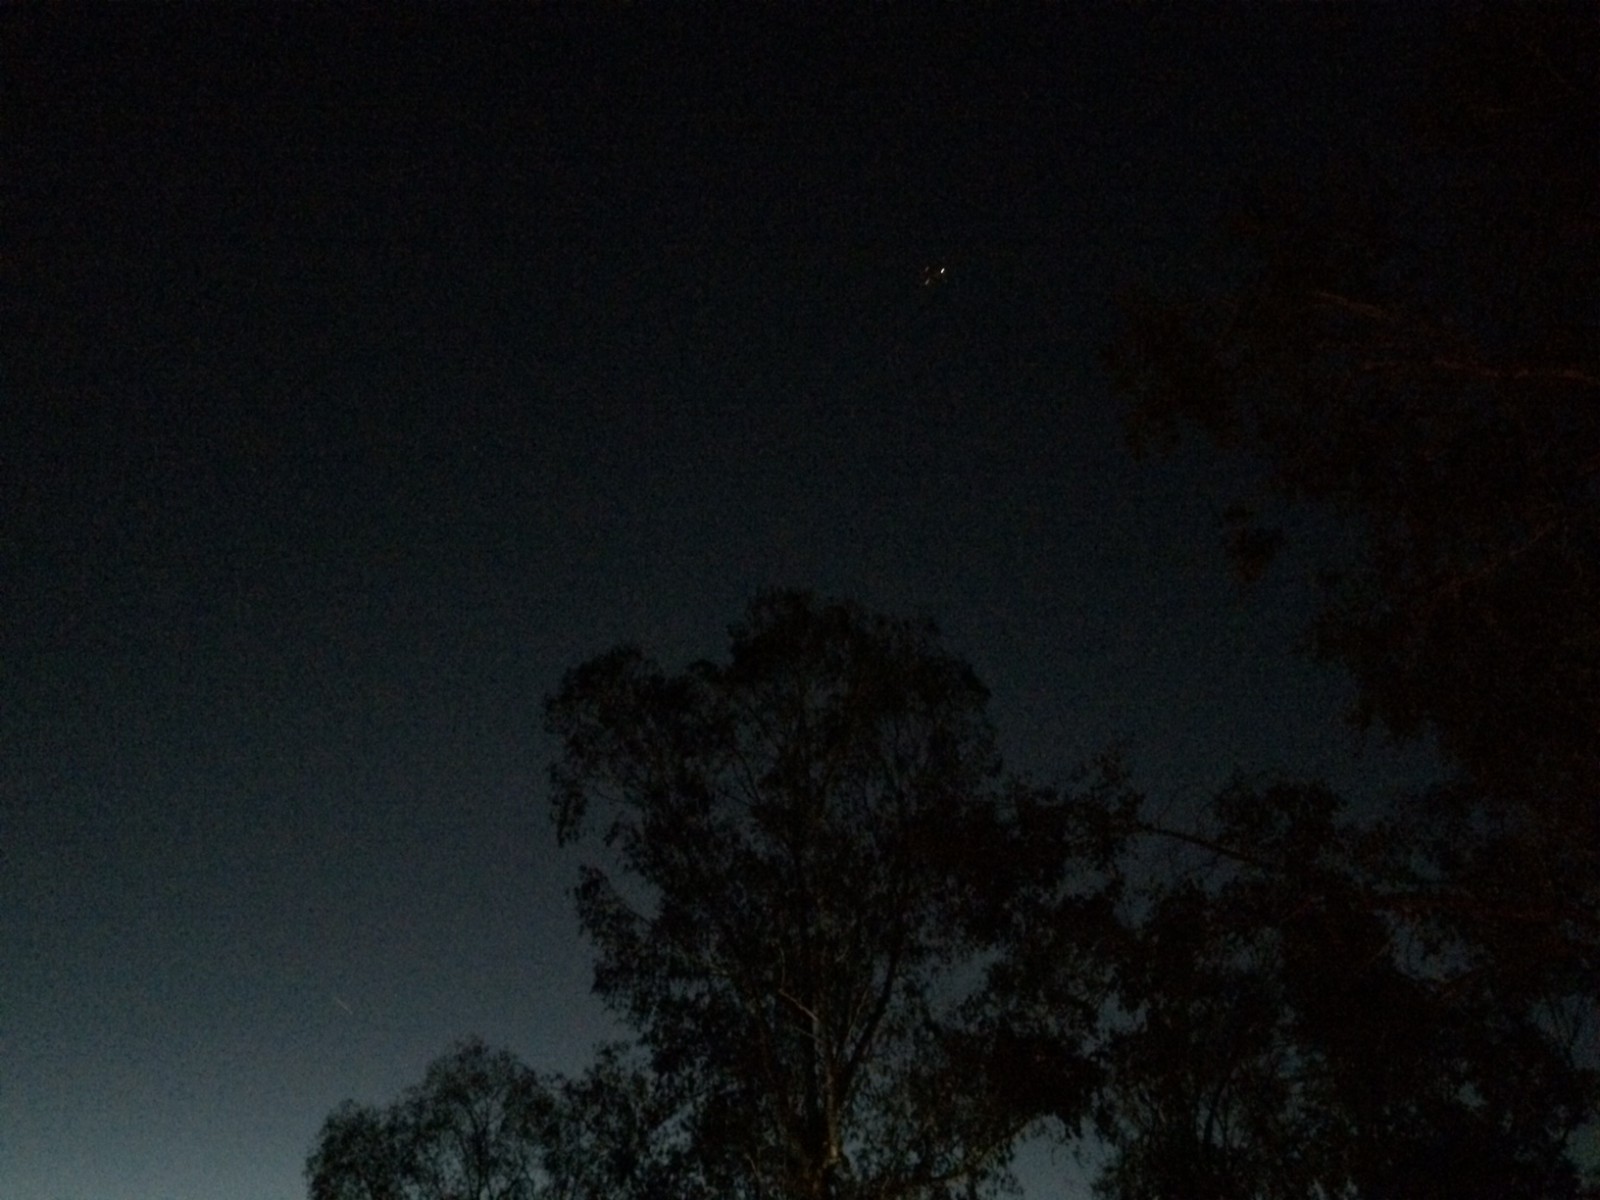 BA289 overhead at dusk November 8th 2014